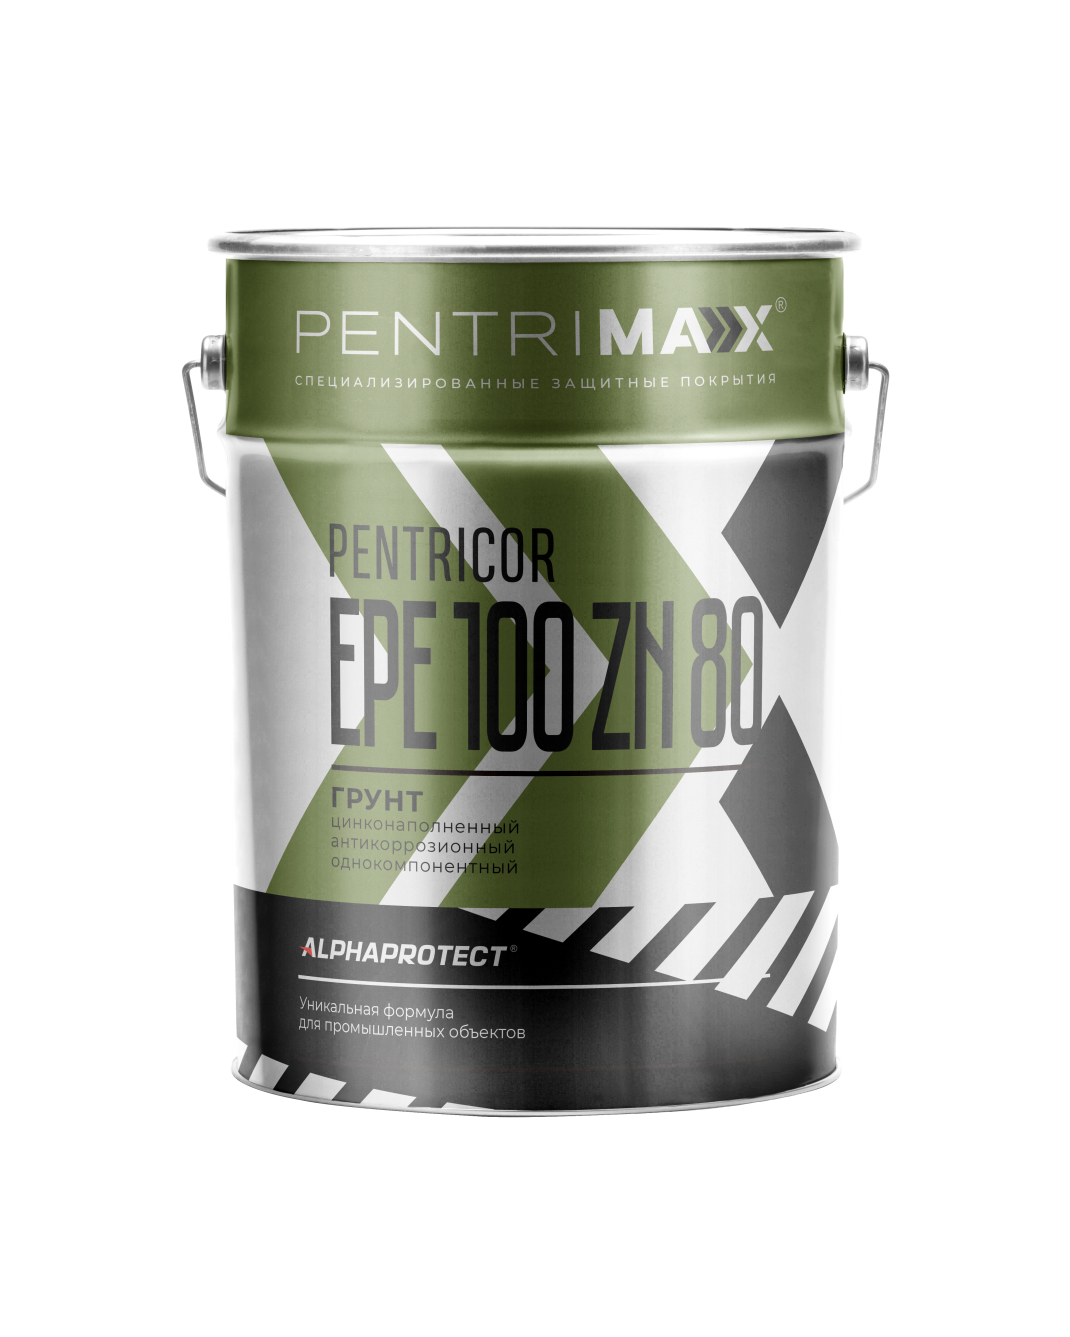 Грунт для оцинкованного металла PENTRICOR EPE 100 Zn 80